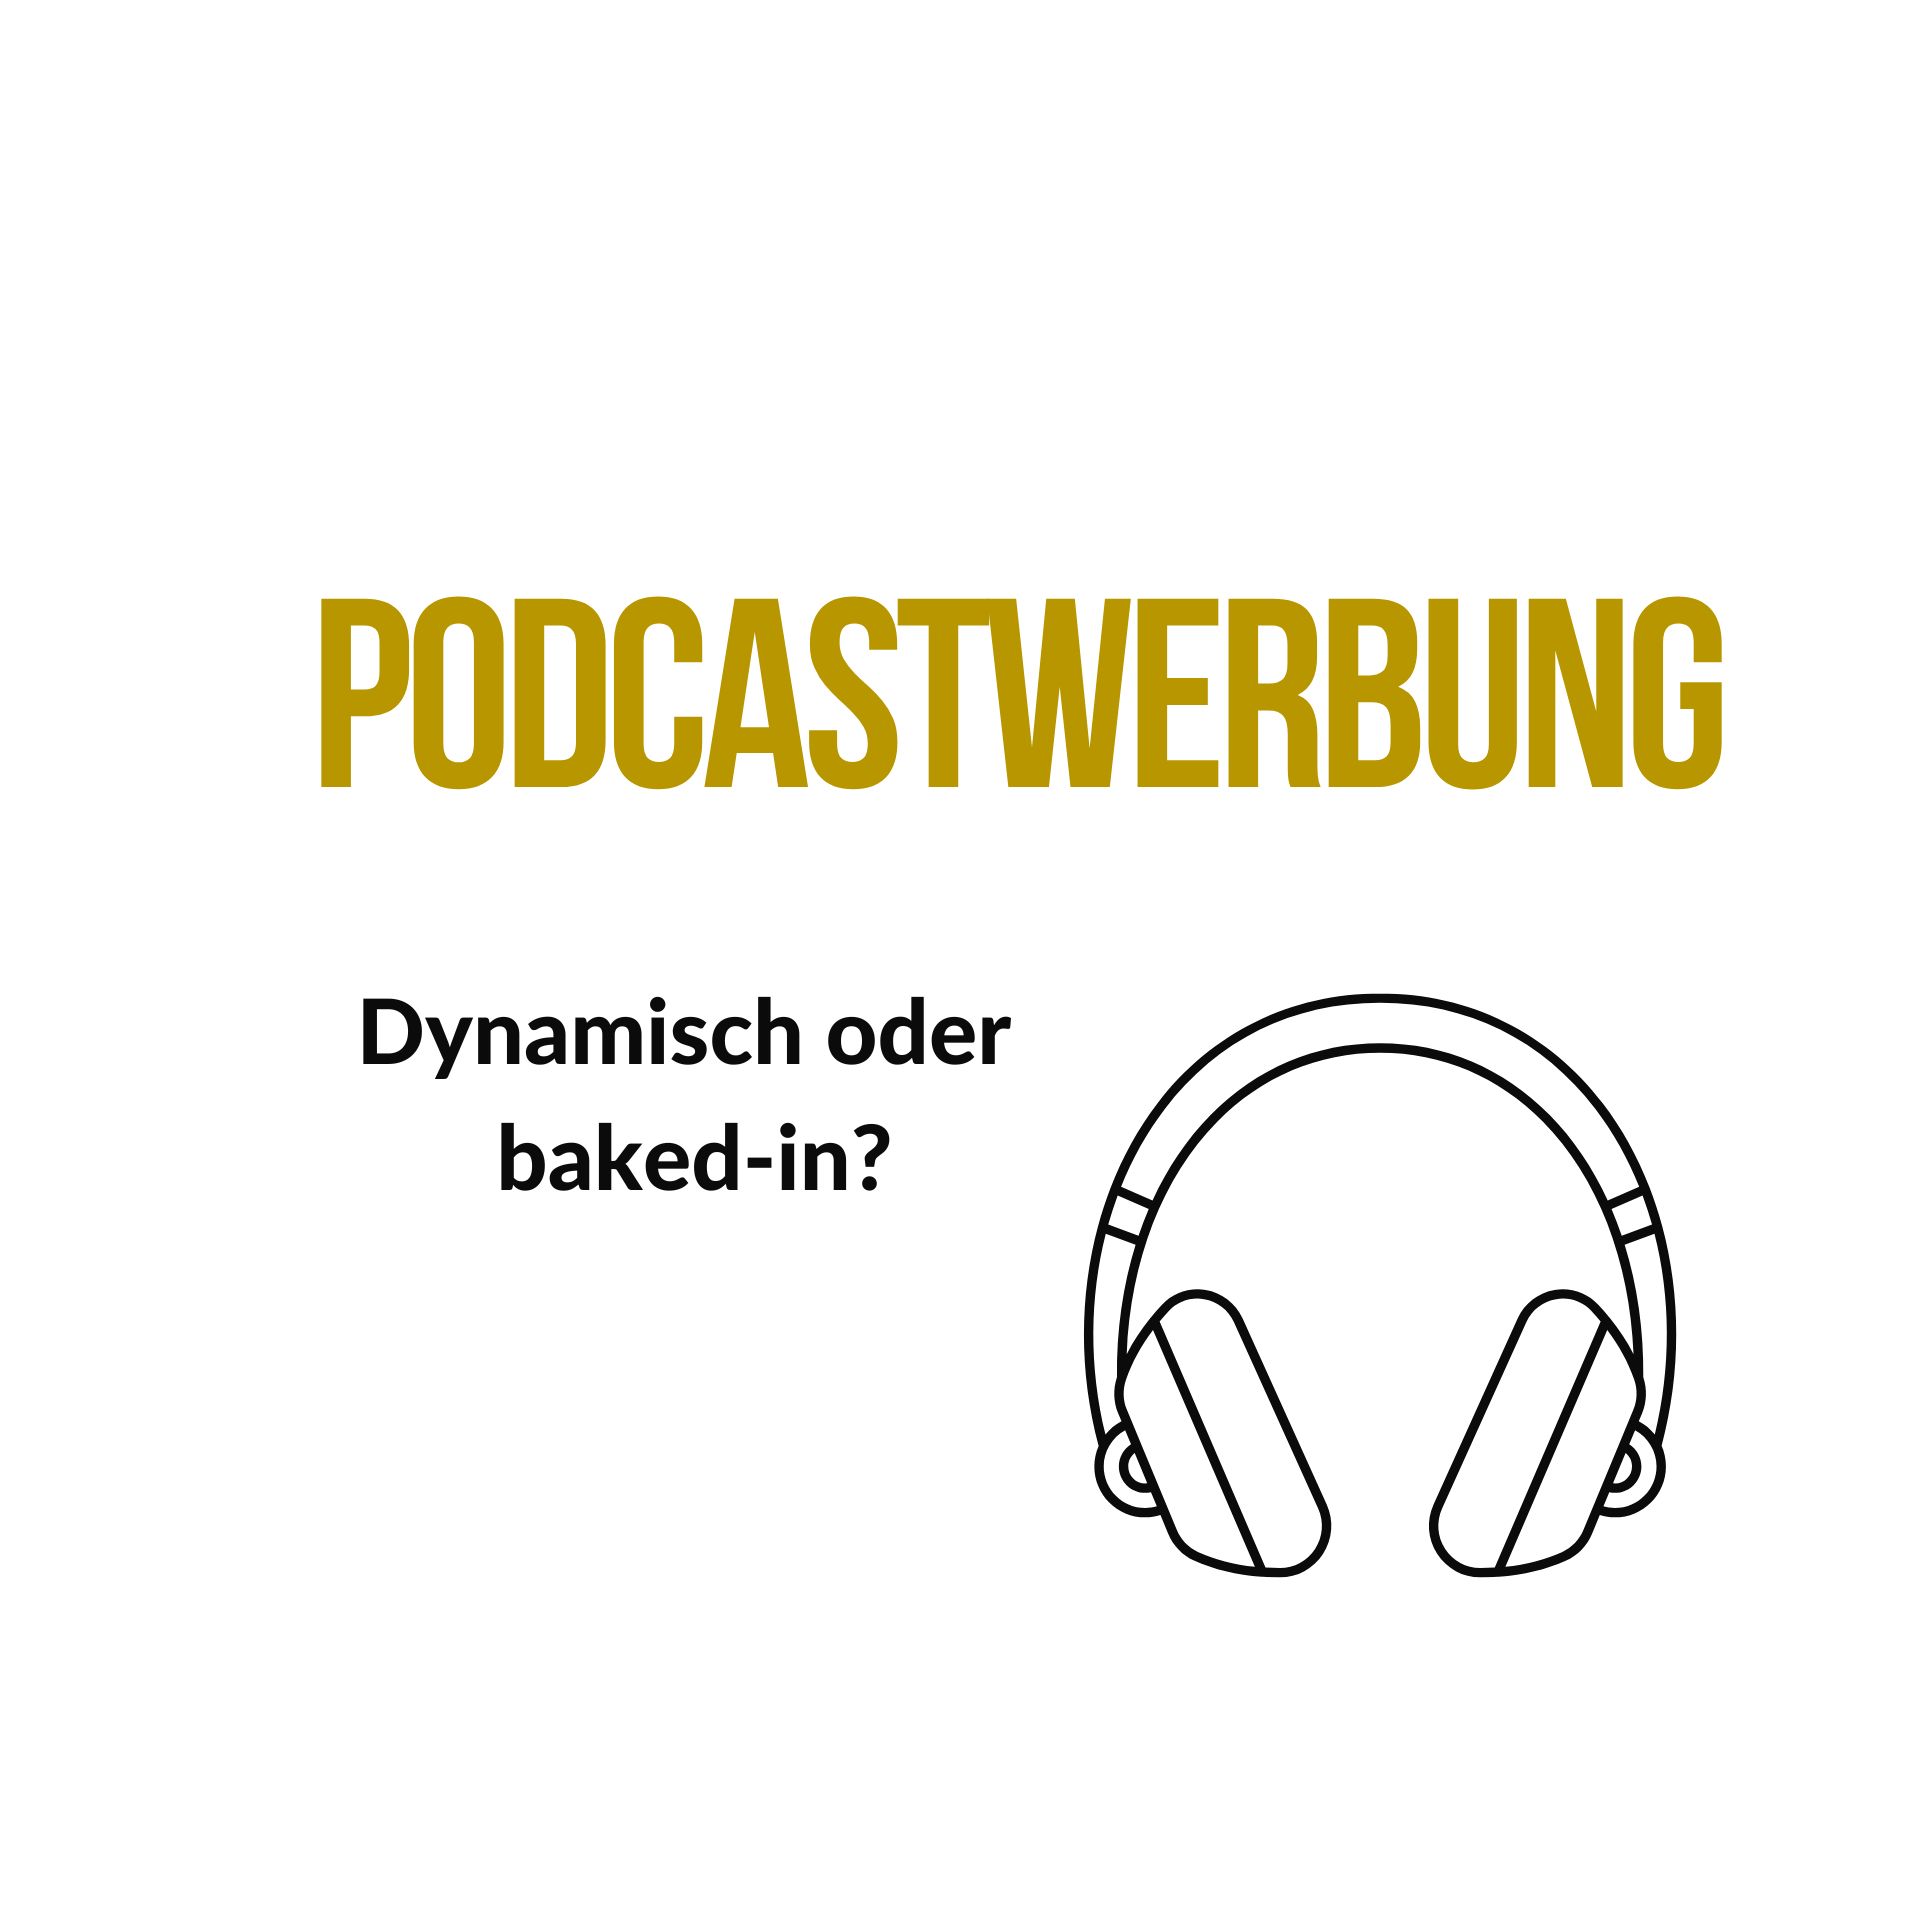 Podcastwerbung dynamisch oder baked-in